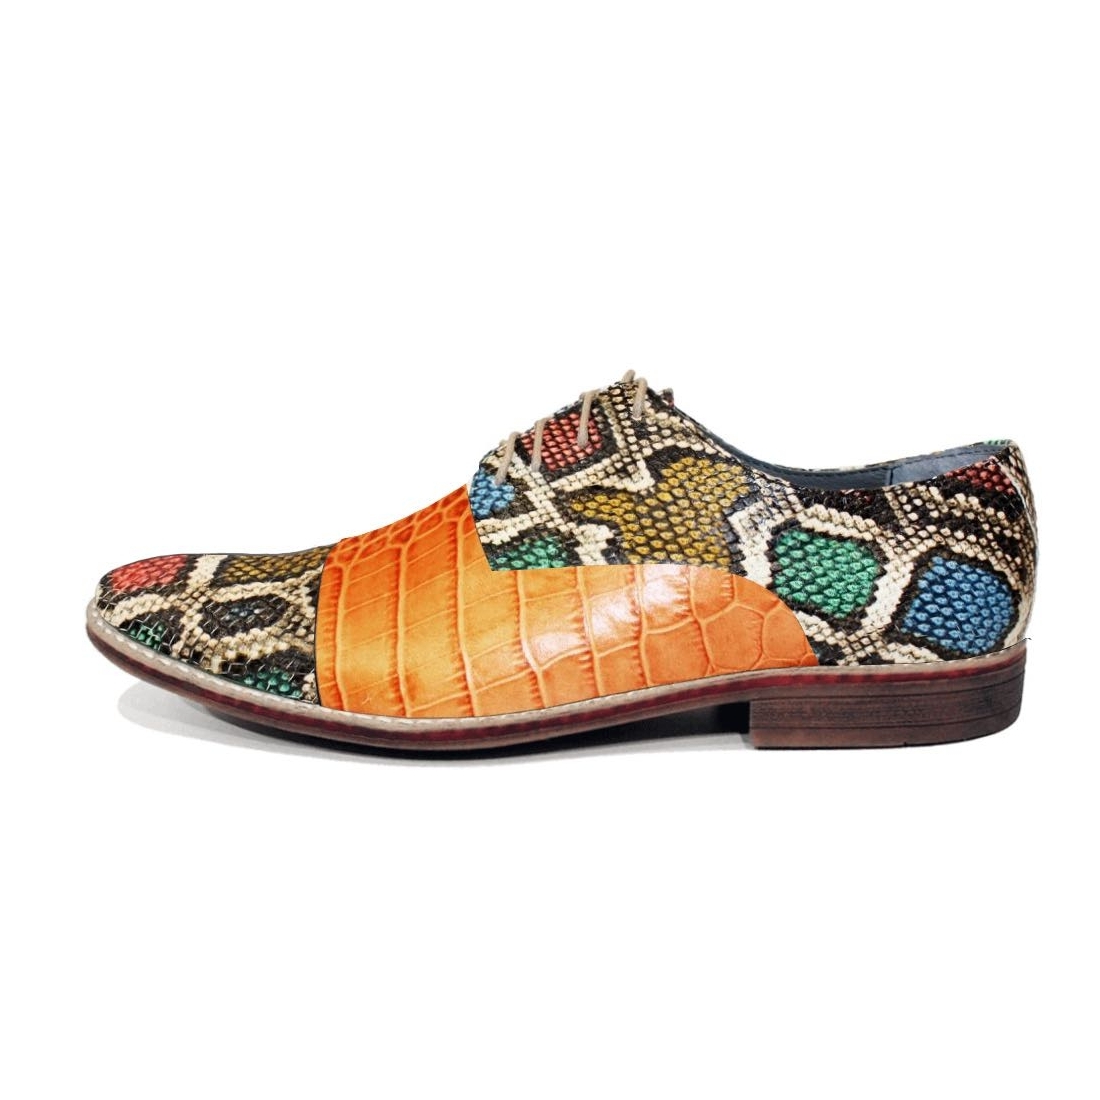 Modello Gadello - Buty Klasyczne - Handmade Colorful Italian Leather Shoes